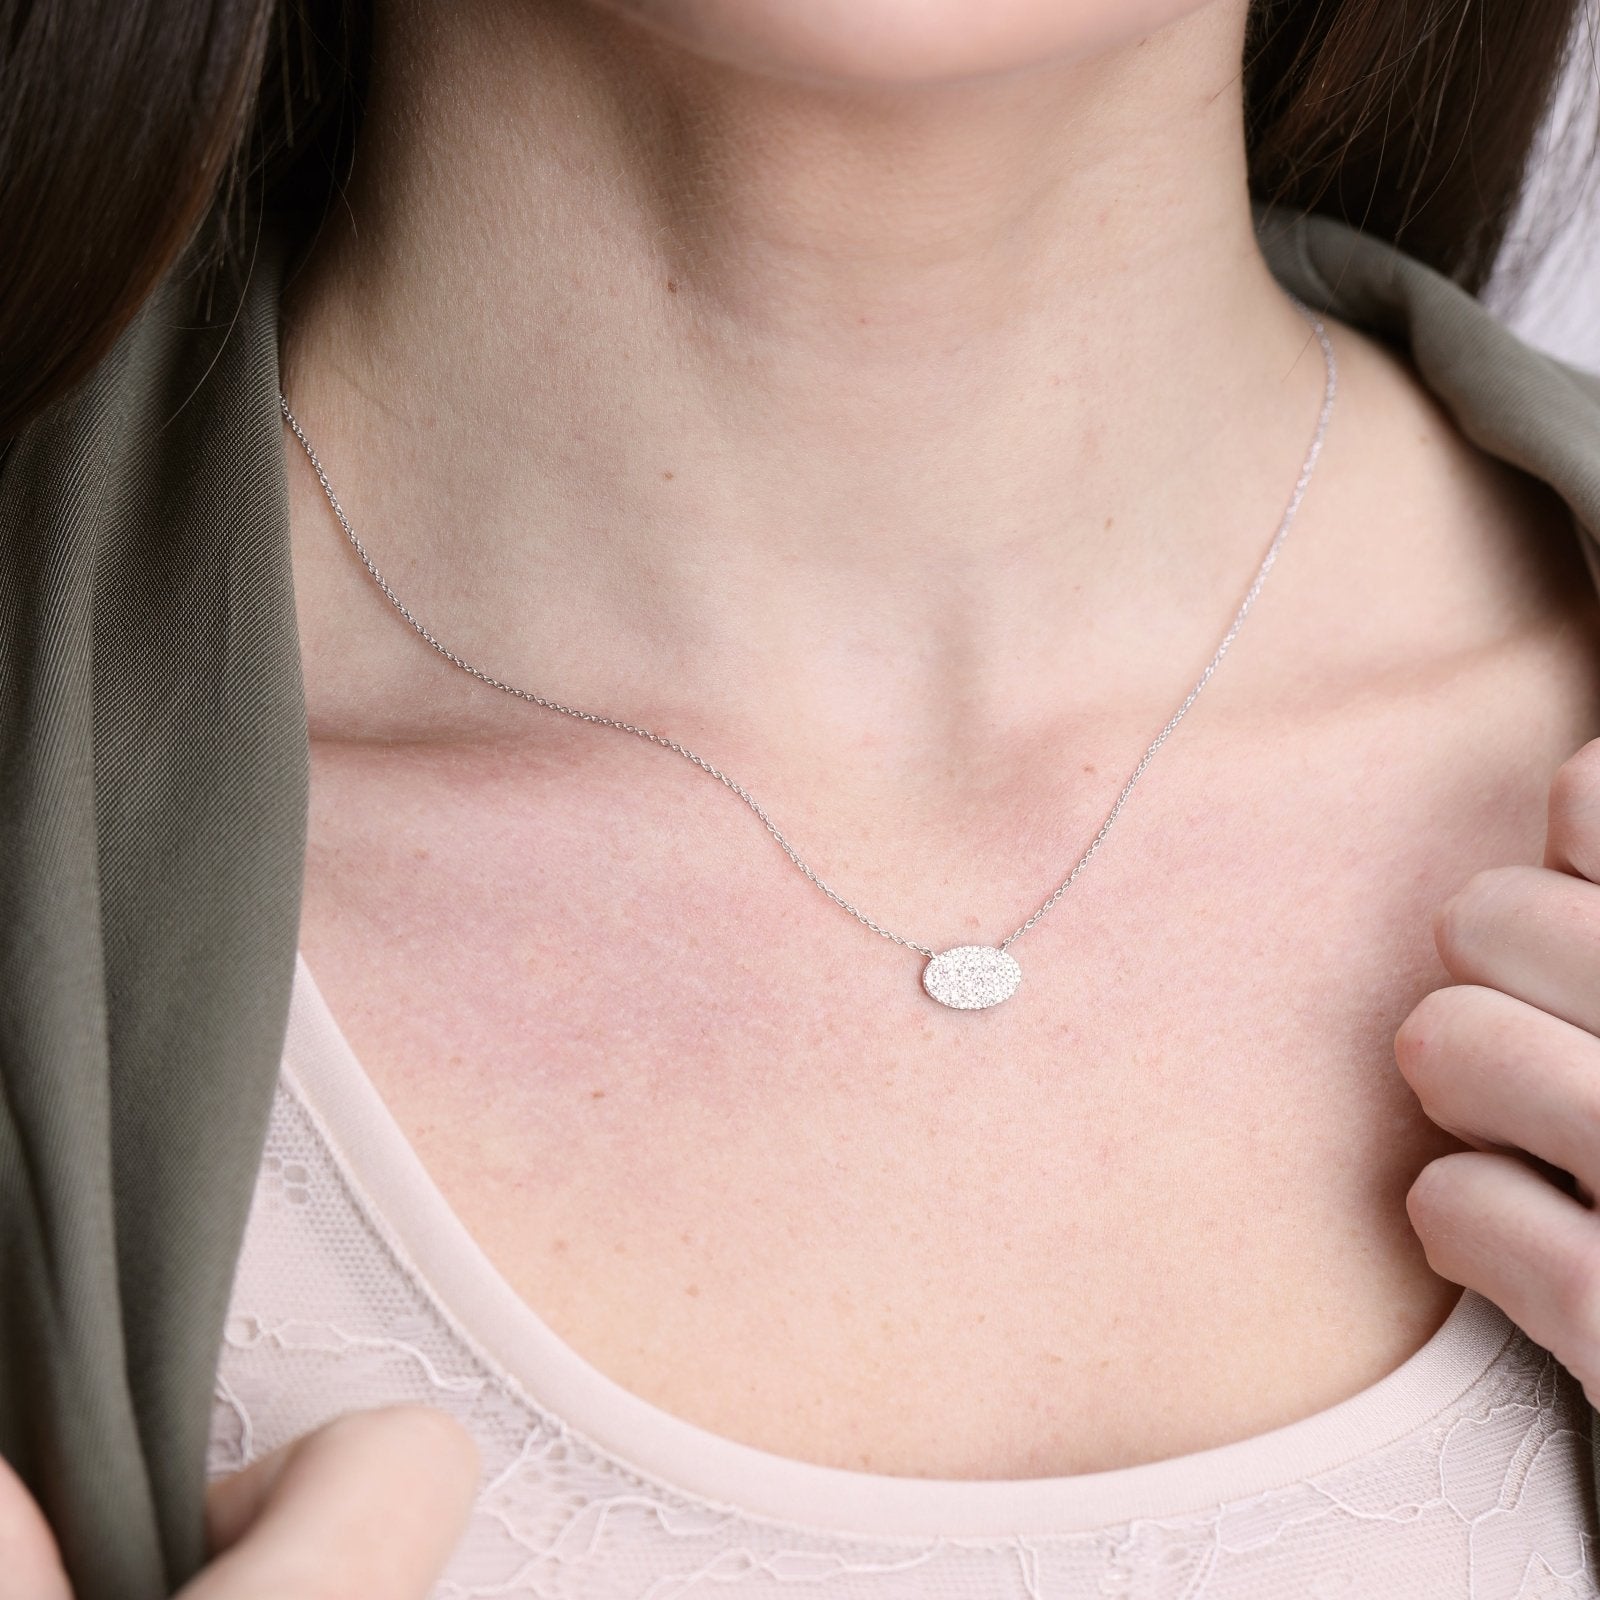 Oval Diamond Pavé Station Necklace Necklaces Estella Collection #product_description# 17706 14k Diamond Gemstone #tag4# #tag5# #tag6# #tag7# #tag8# #tag9# #tag10#